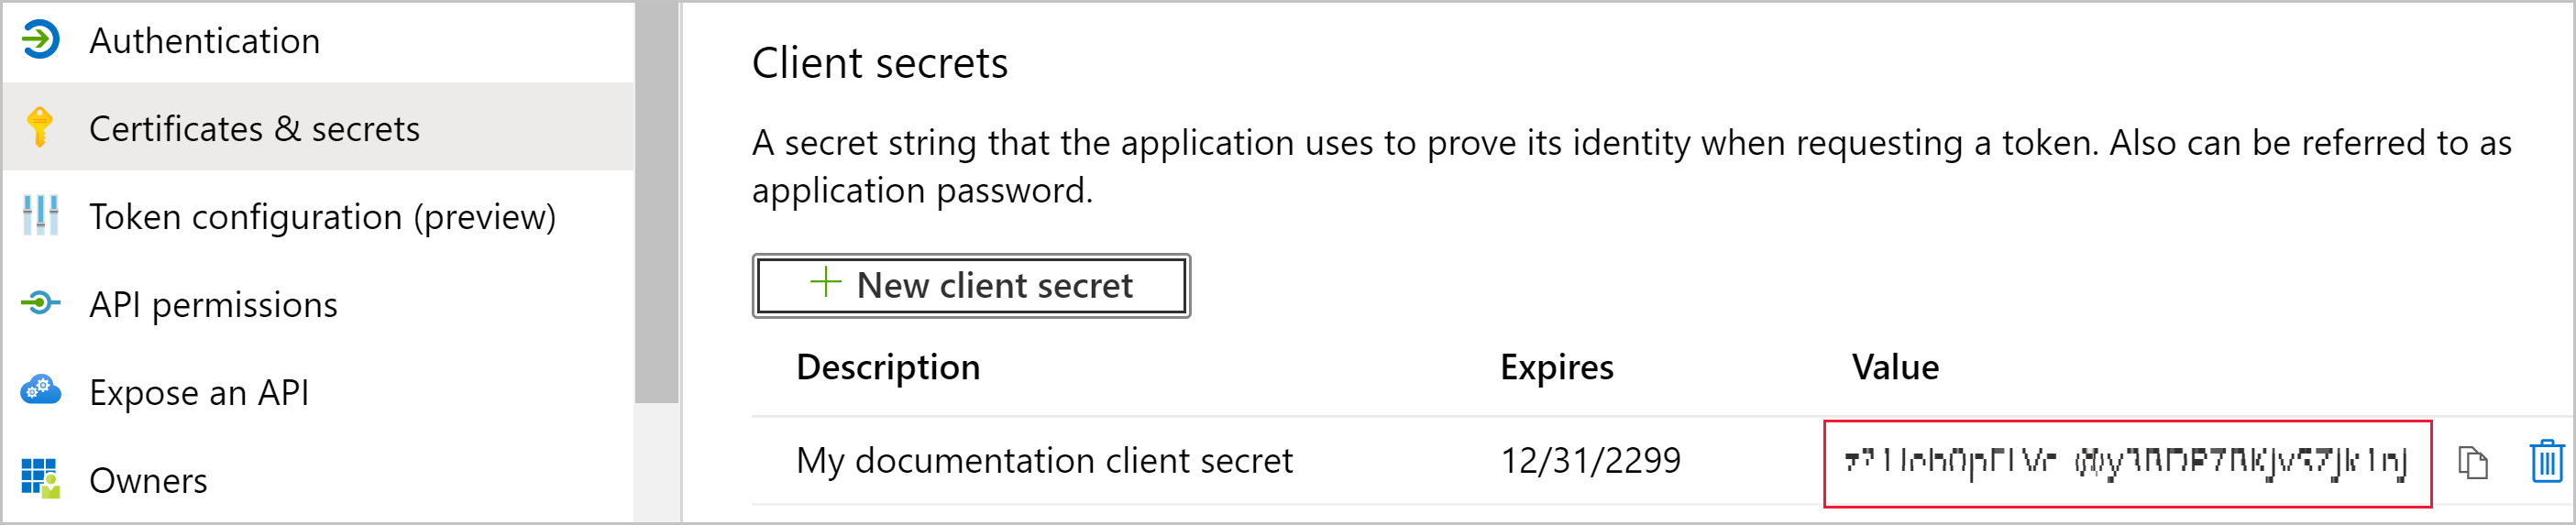 Captura de tela da página Certificados e segredos do aplicativo. Em Segredos do cliente, um novo segredo está visível. Seu valor indecifrável está realçado.